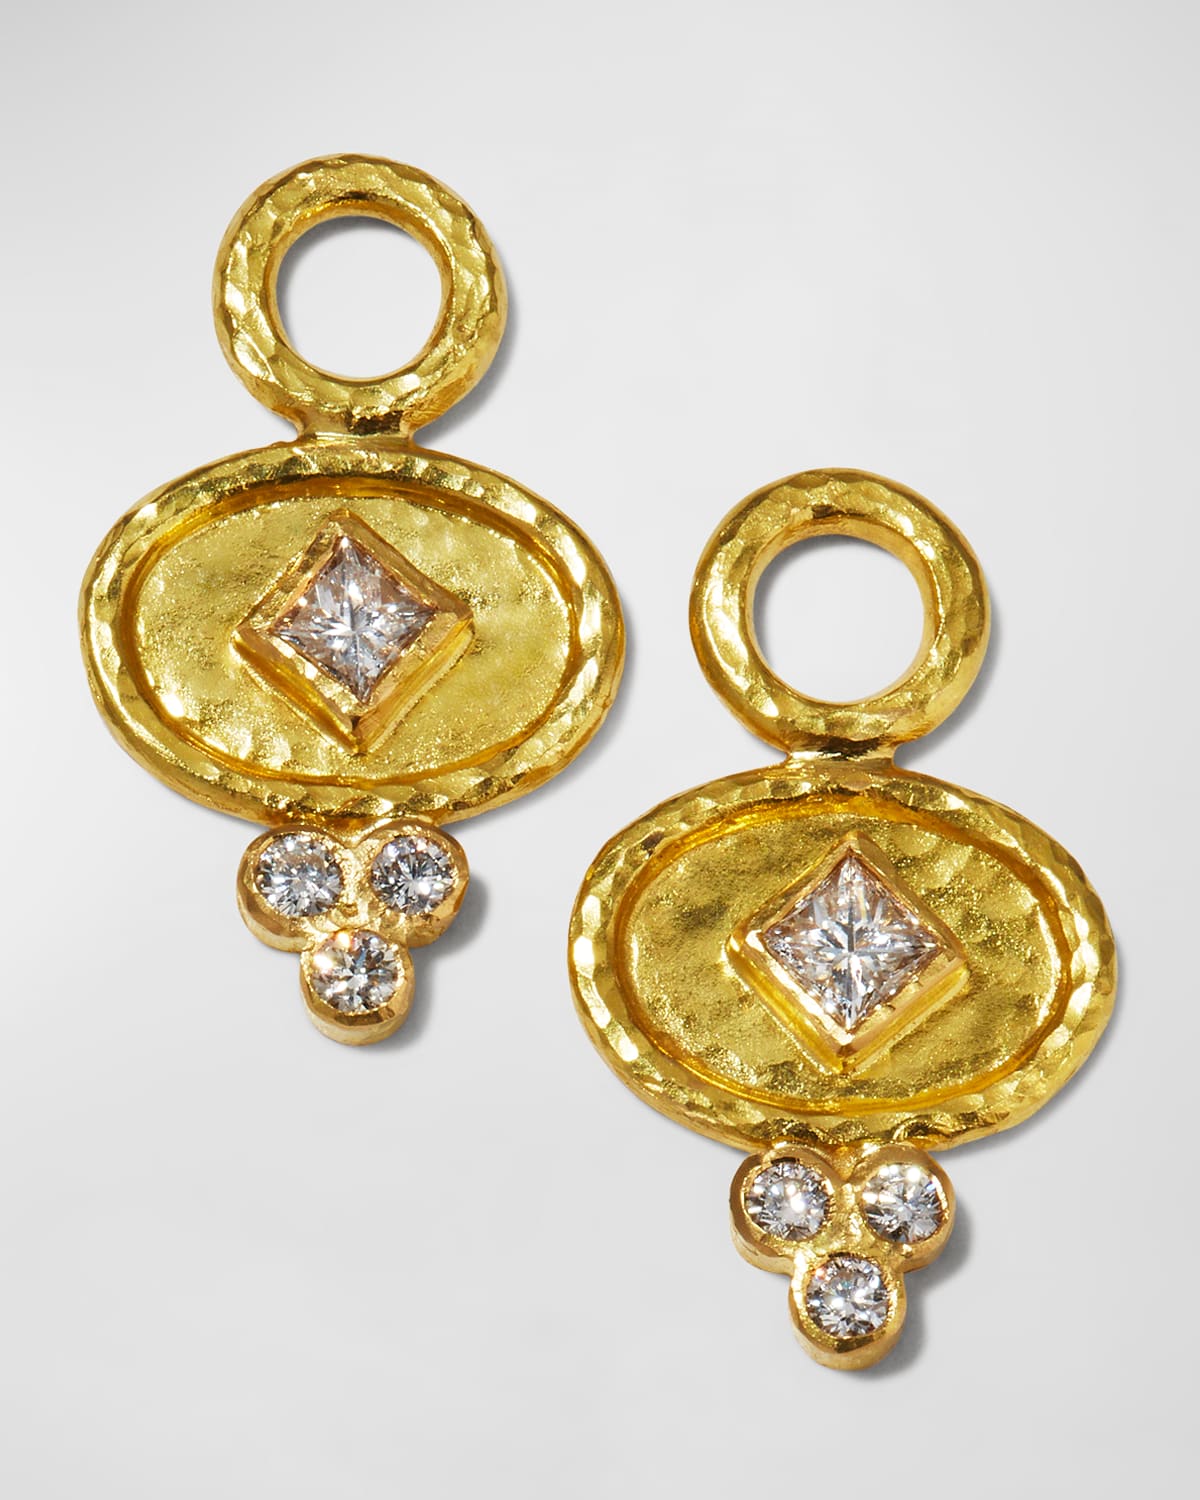 19K Gold Oval Diamond Earring Pendants